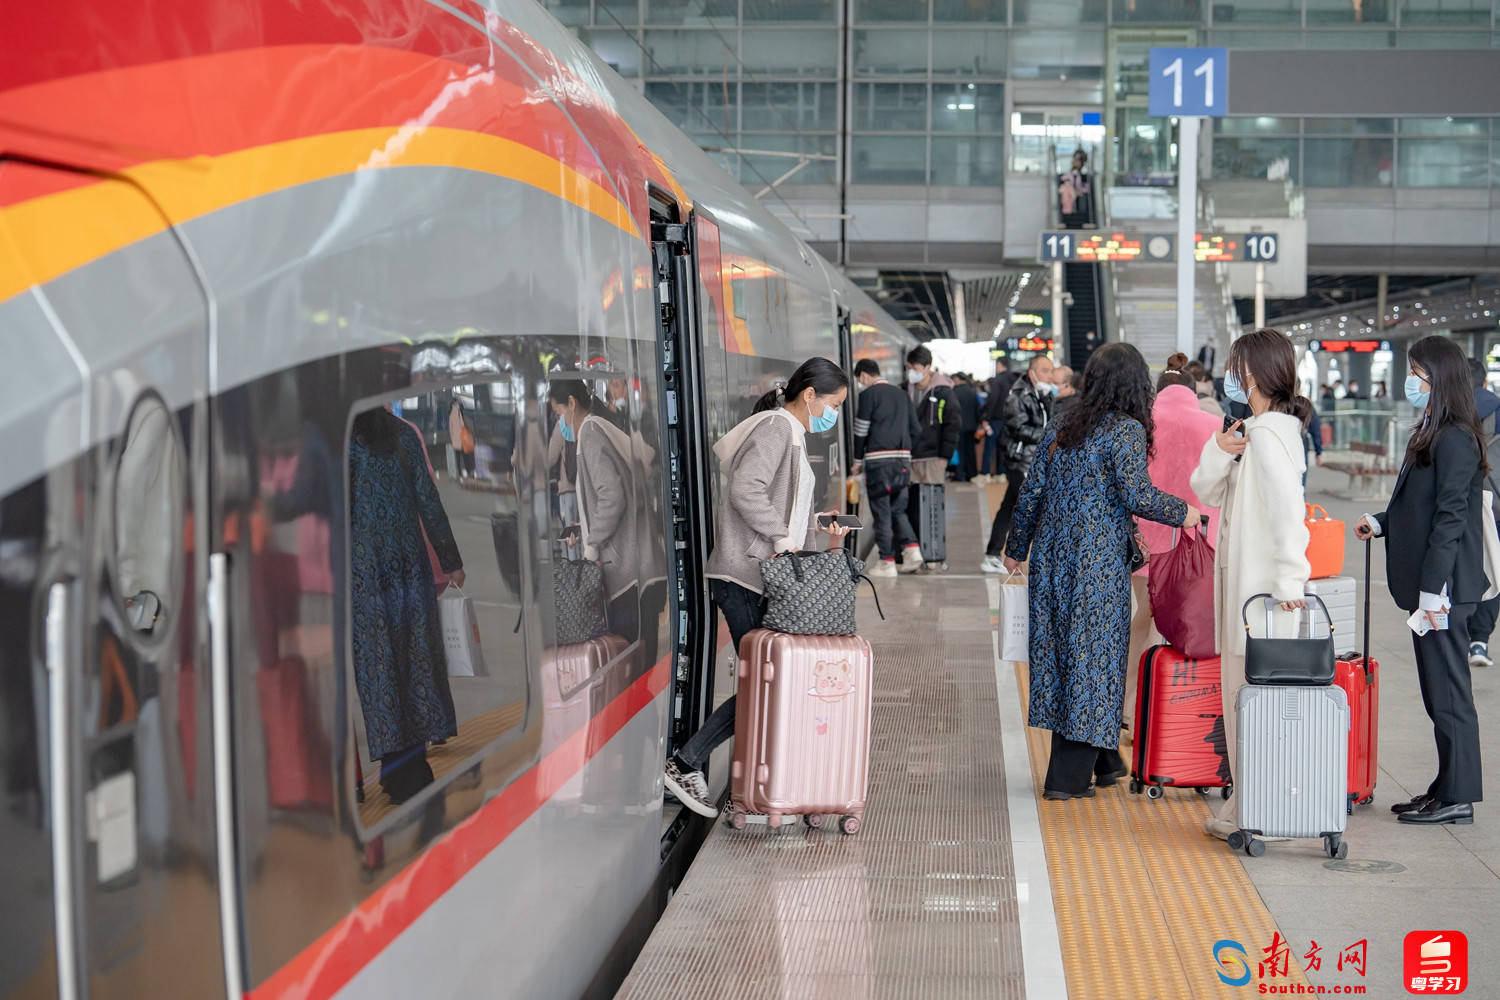 手机华为p6在线升级
:2023年春运广州南站预计到发旅客1503.2万人次